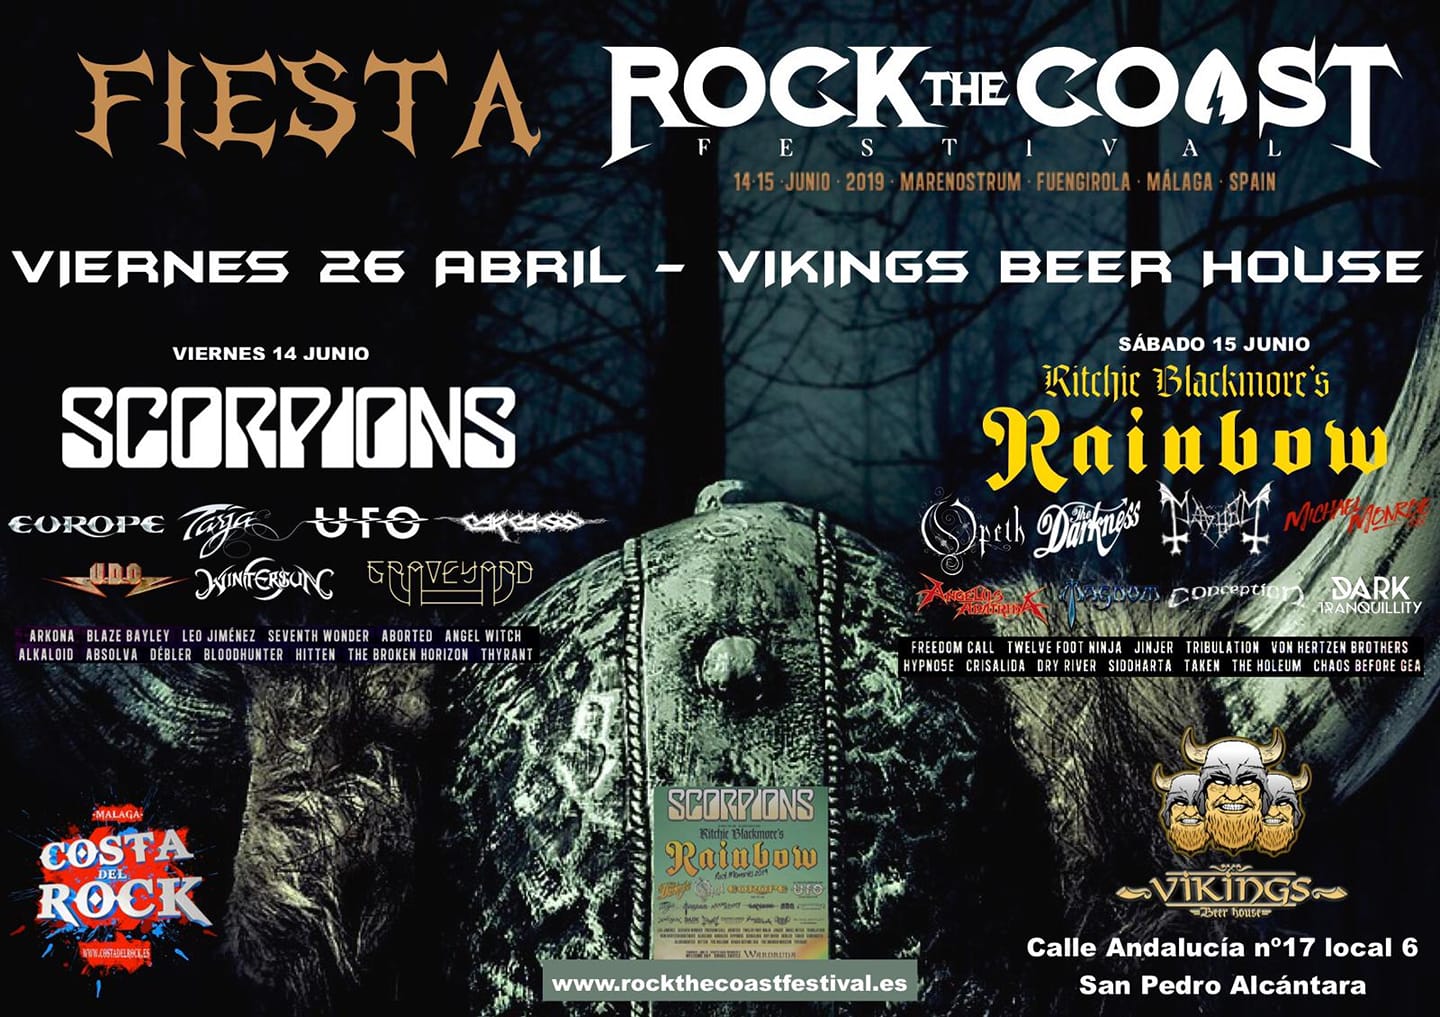 Fiesta Rock The Coast Festival el 26 de abril en Viking Beer House (San Pedro De Alcántara)